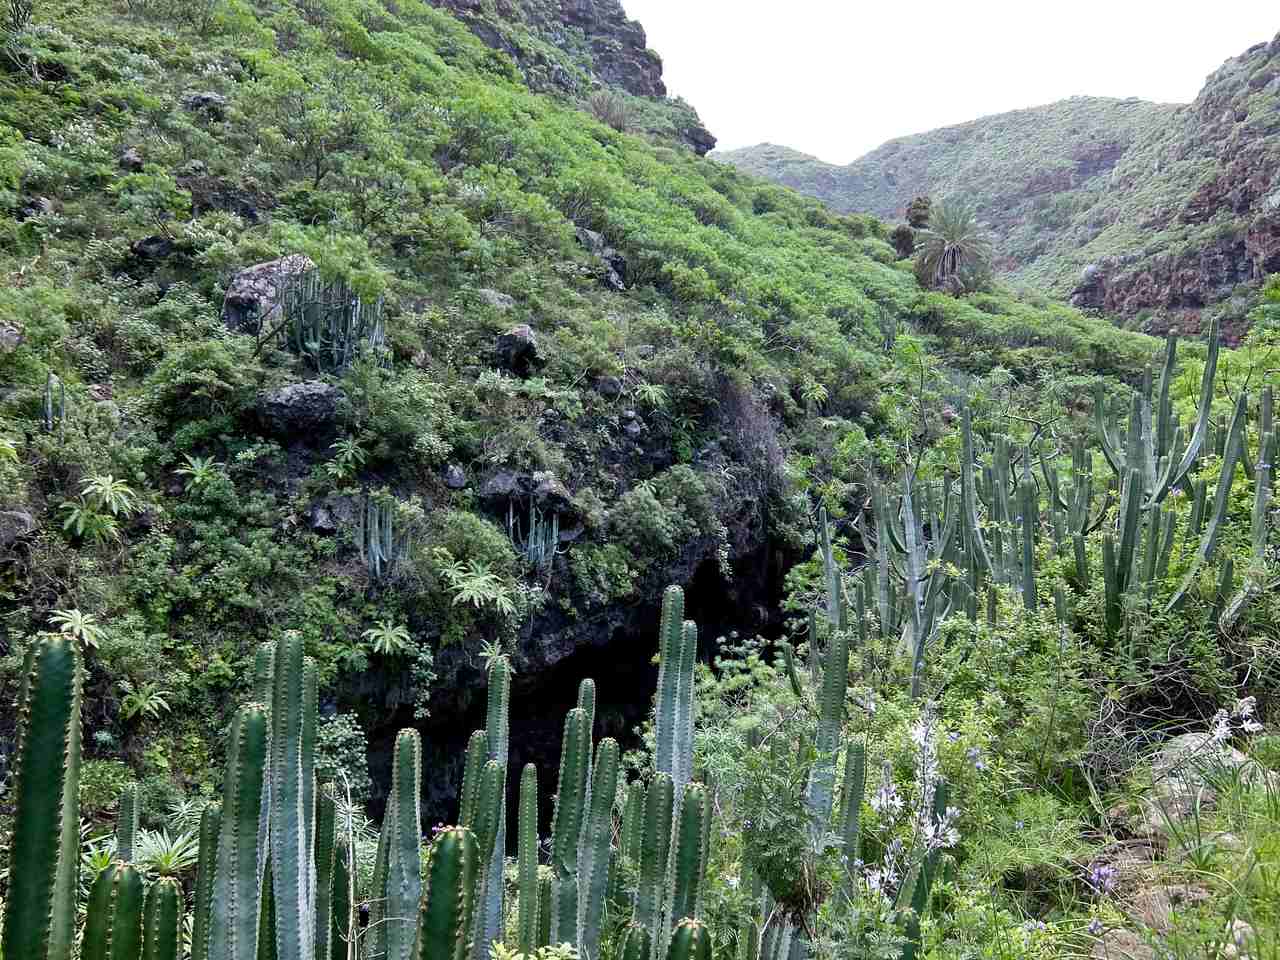 Cactus in Barranco de Franceses